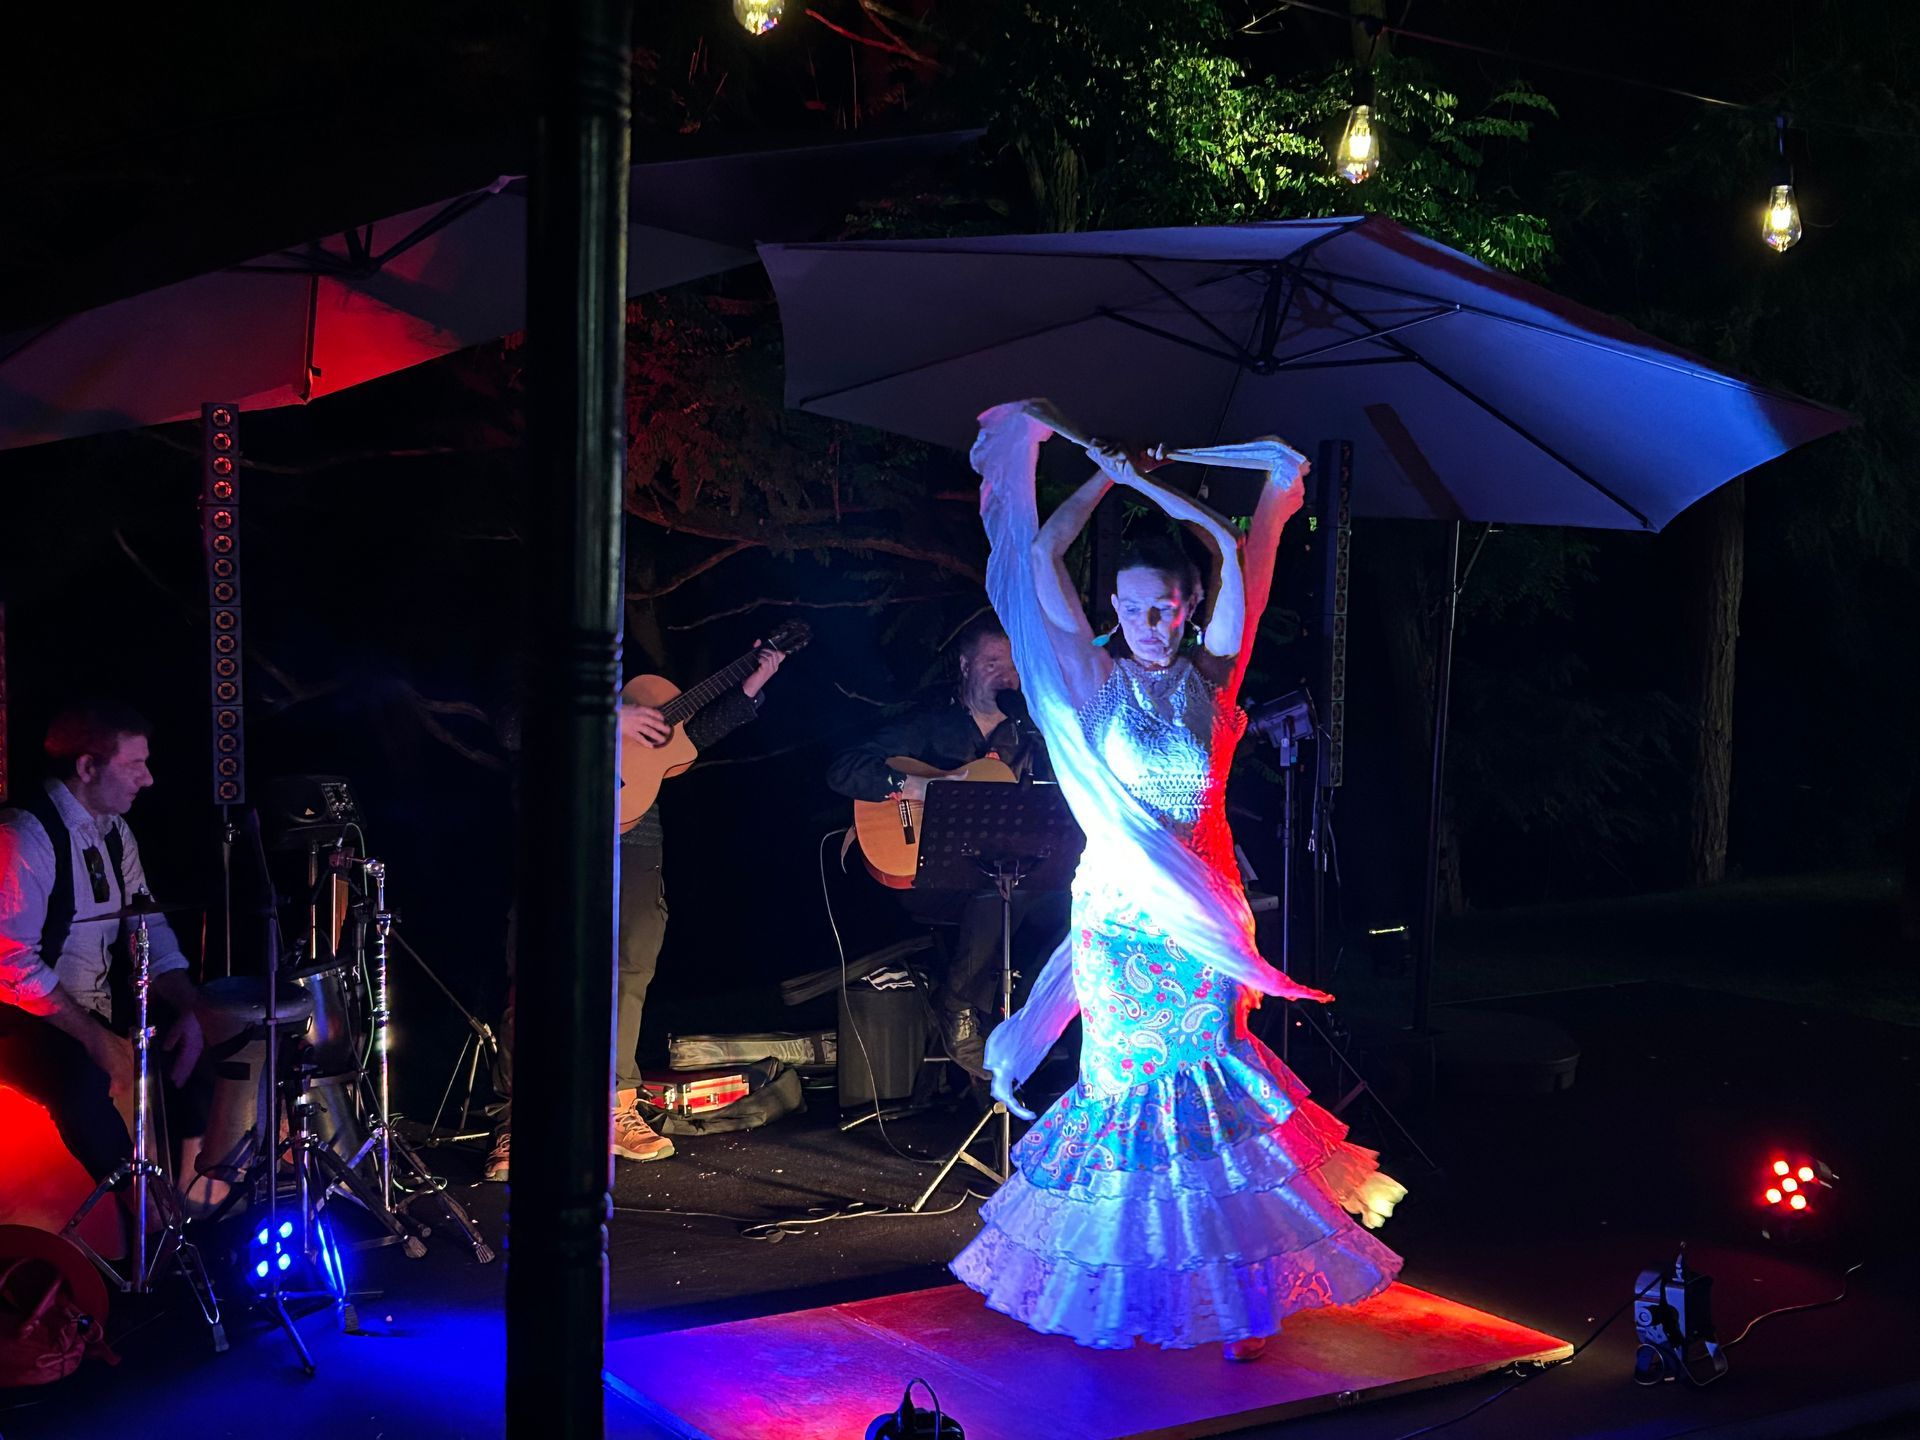 Eine Tänzerin in einem bunten, spanischen Kleid führt einen spanischen Tanz auf. Sie wird von verschiedenen Lichtern angestrahlt.